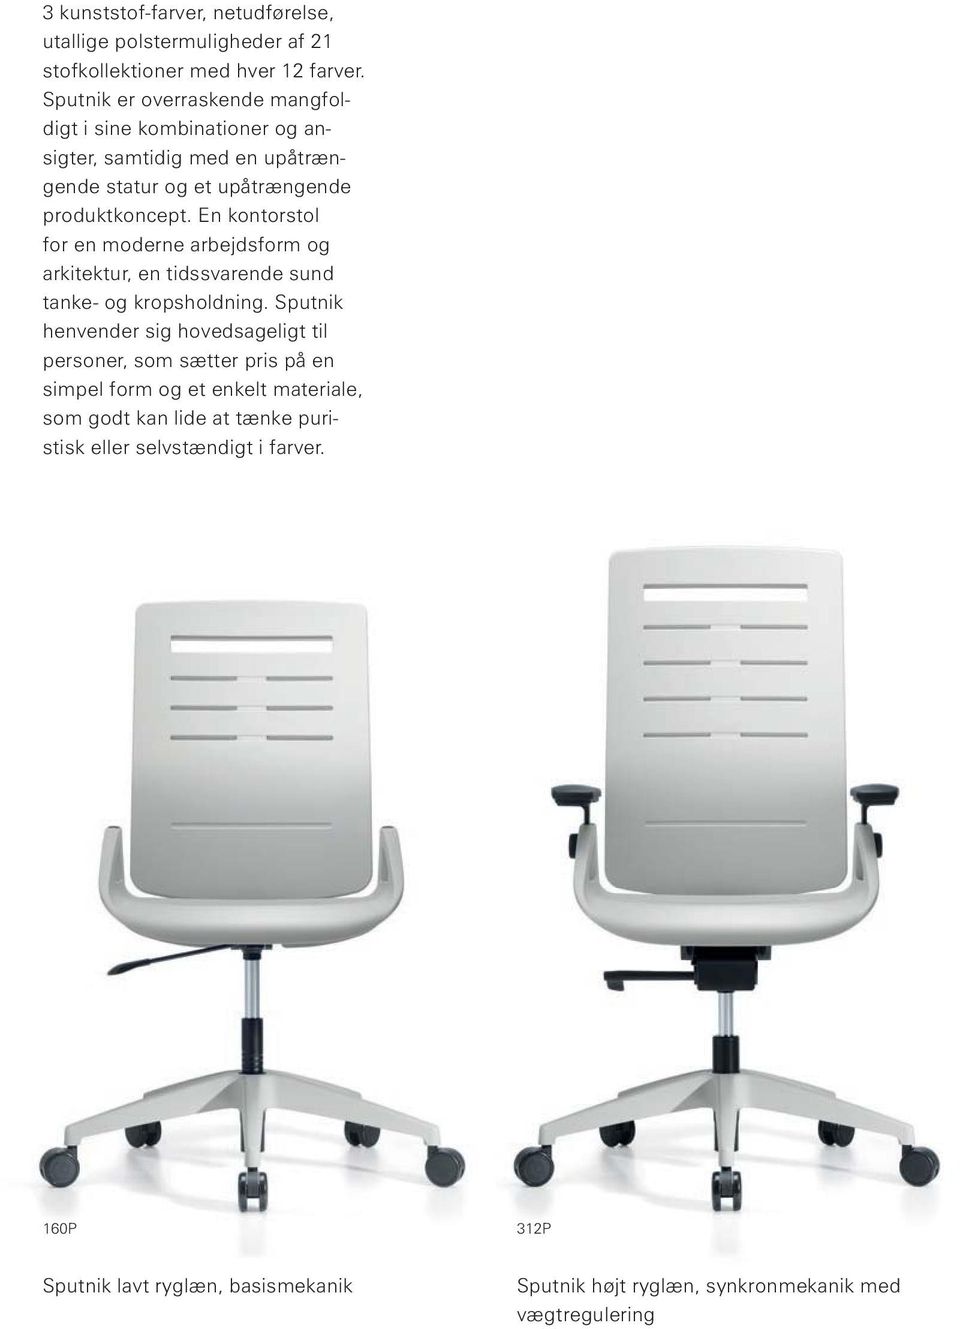 En kontorstol for en moderne arbejdsform og arkitektur, en tidssvarende sund tanke og kropsholdning.